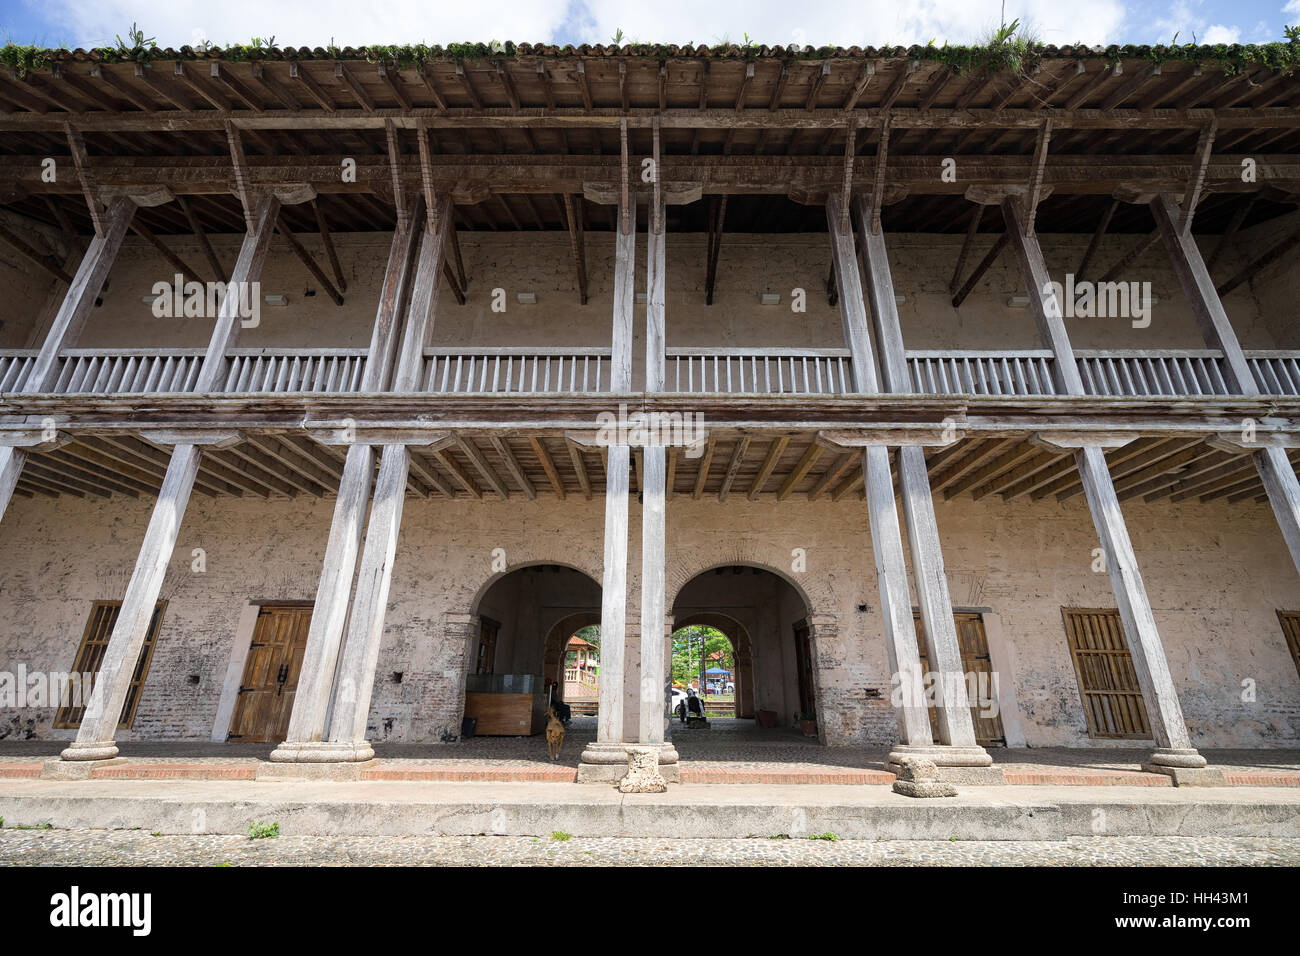 Dettagli architettonici del custom house in Fort Jeronimo, Portobelo, Panama Foto Stock